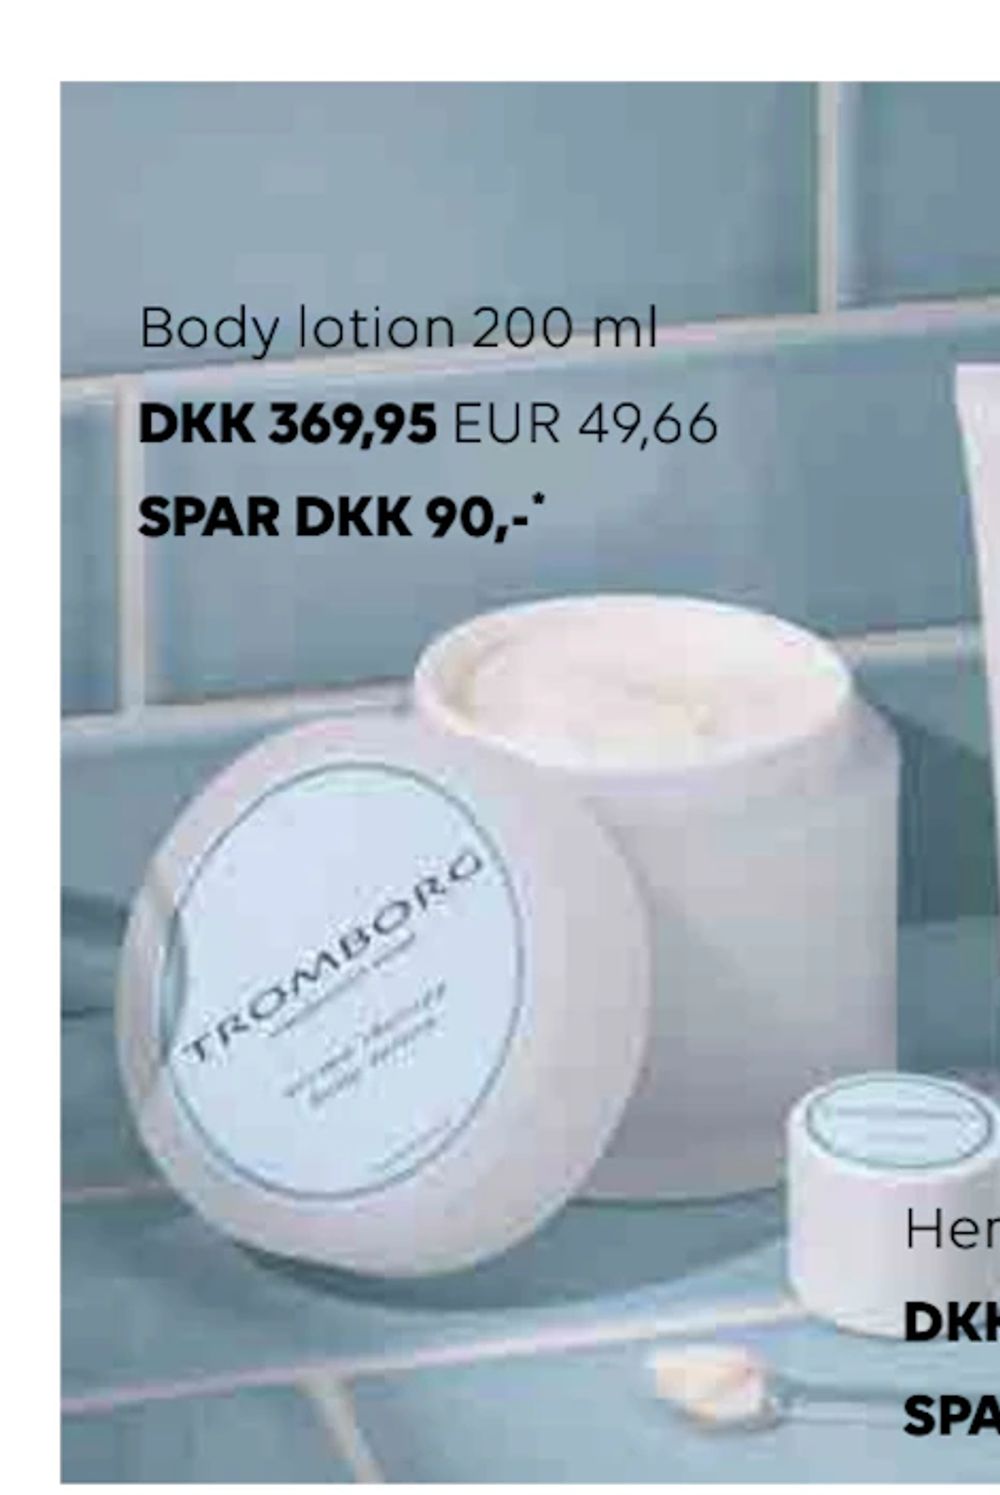 Erbjudanden på Body lotion 200 ml från Scandlines Travel Shop för 49,66 €